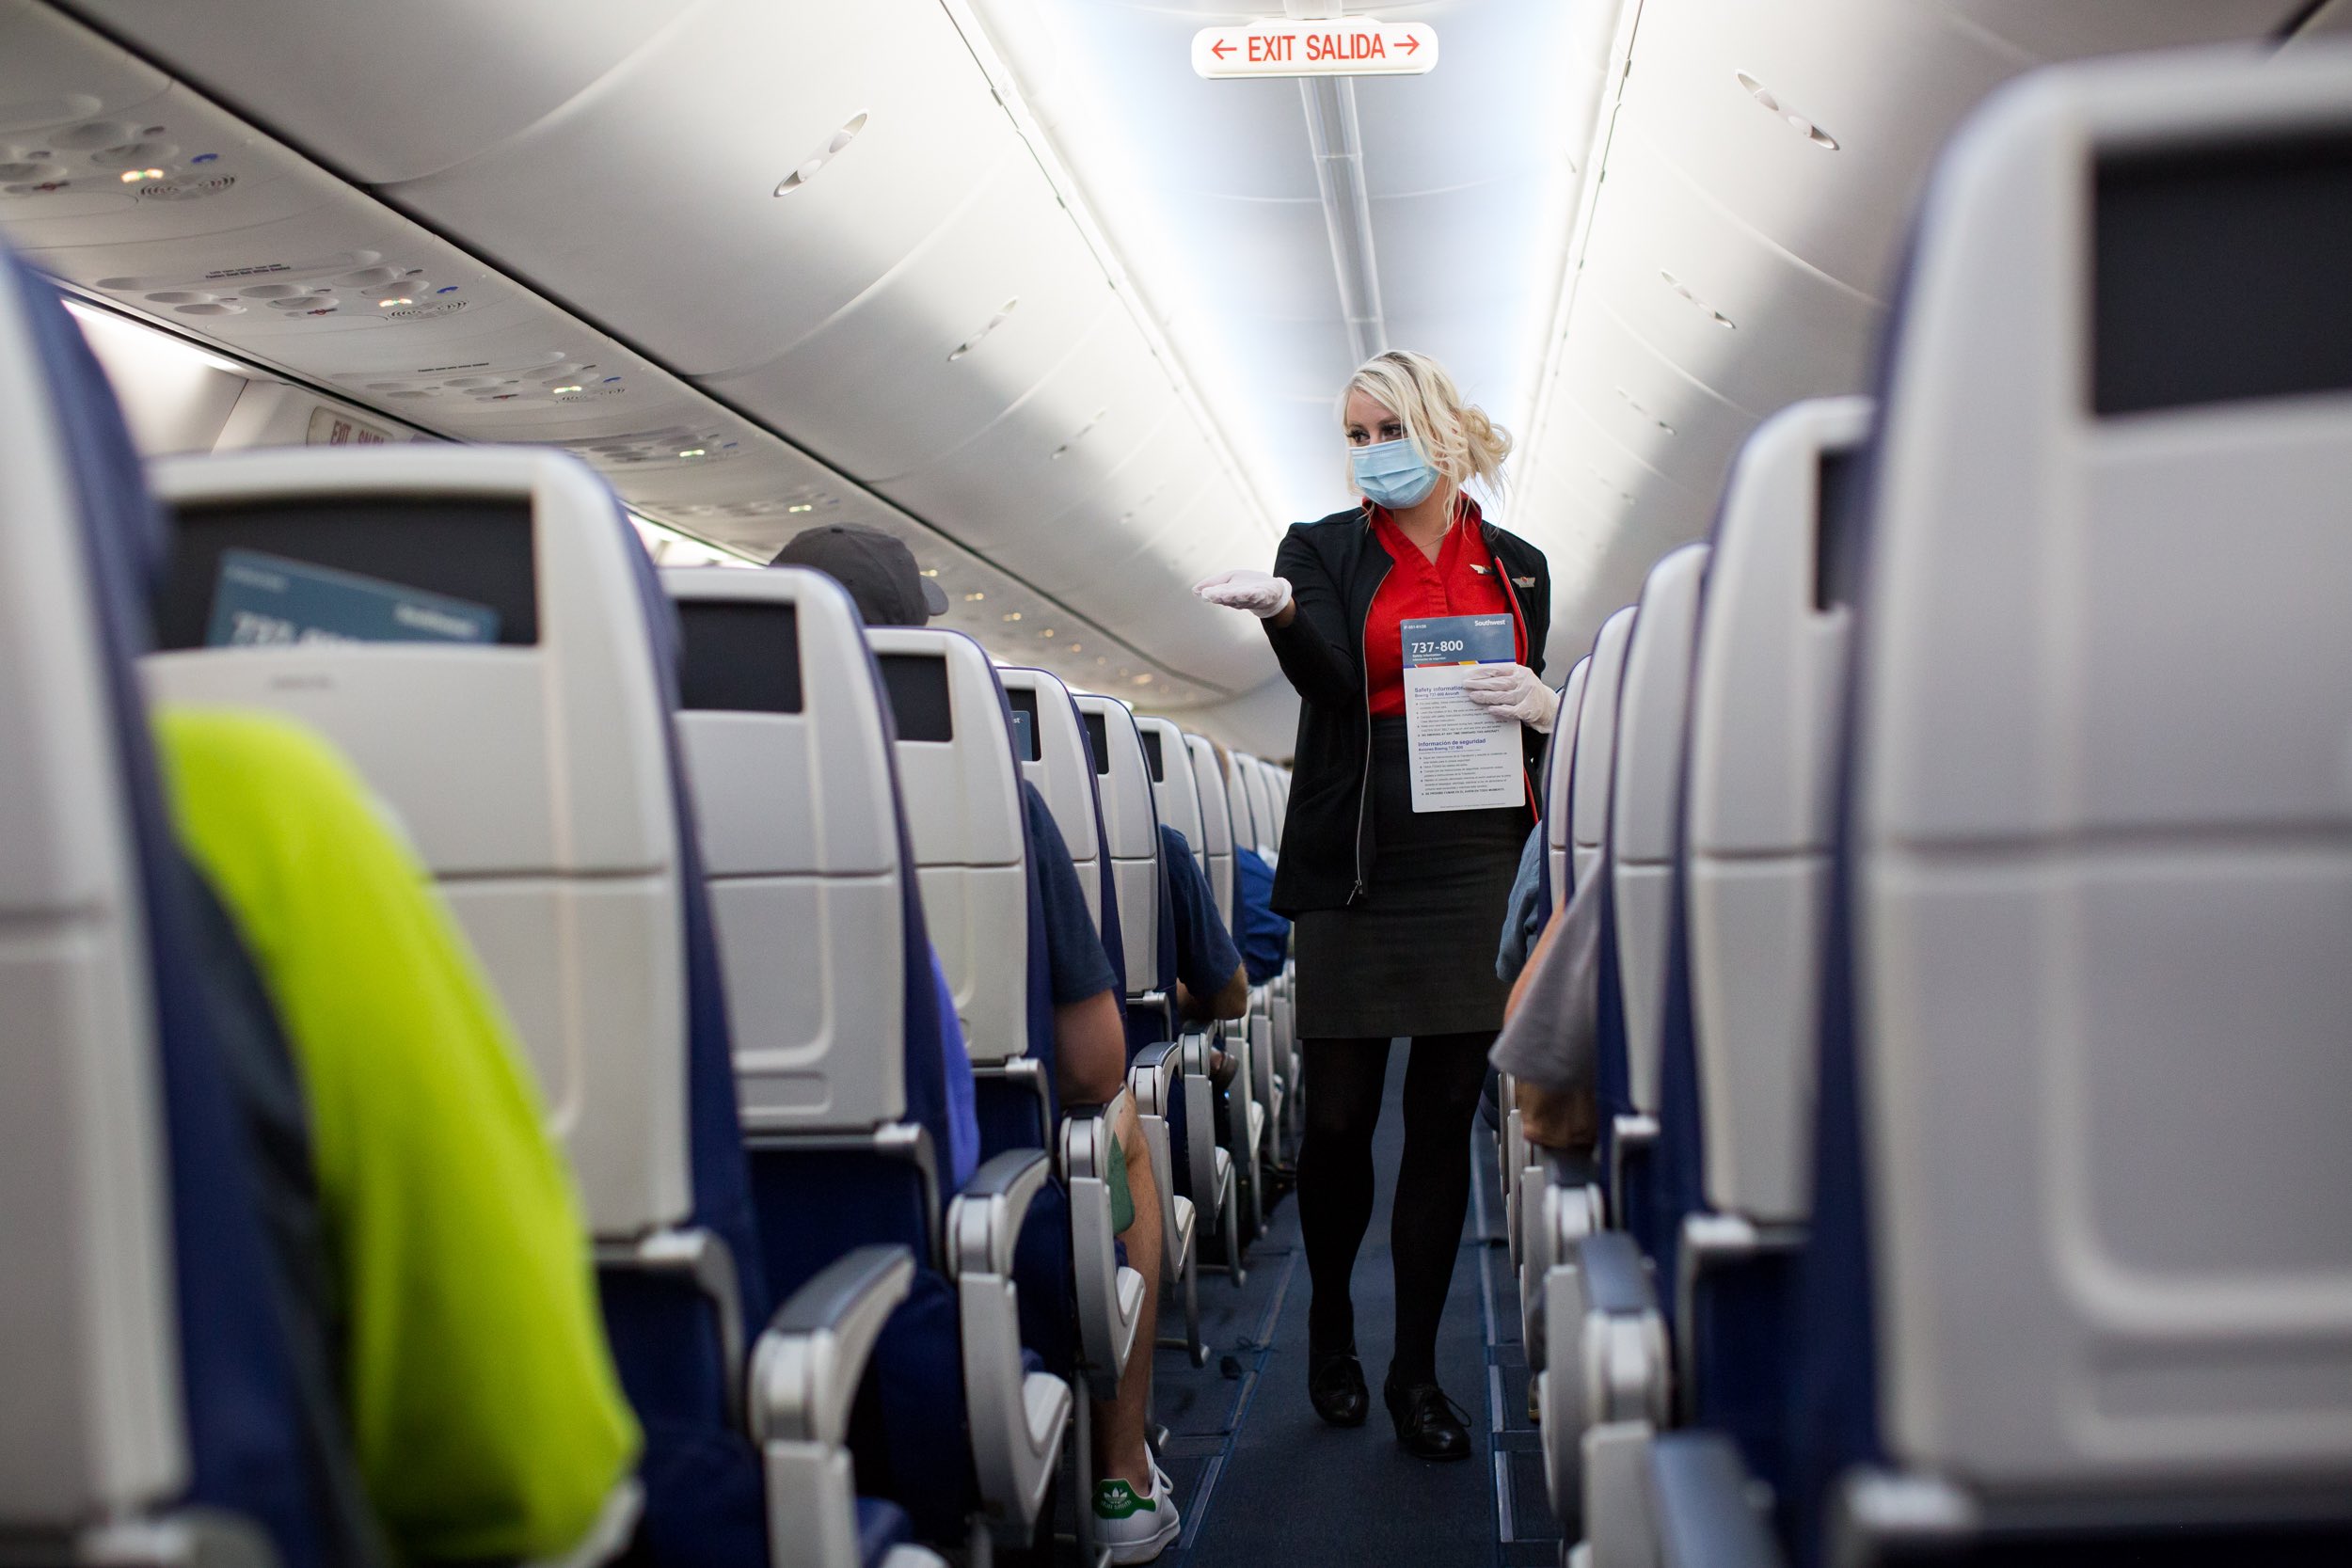 southwest airlines flight attendant announcements